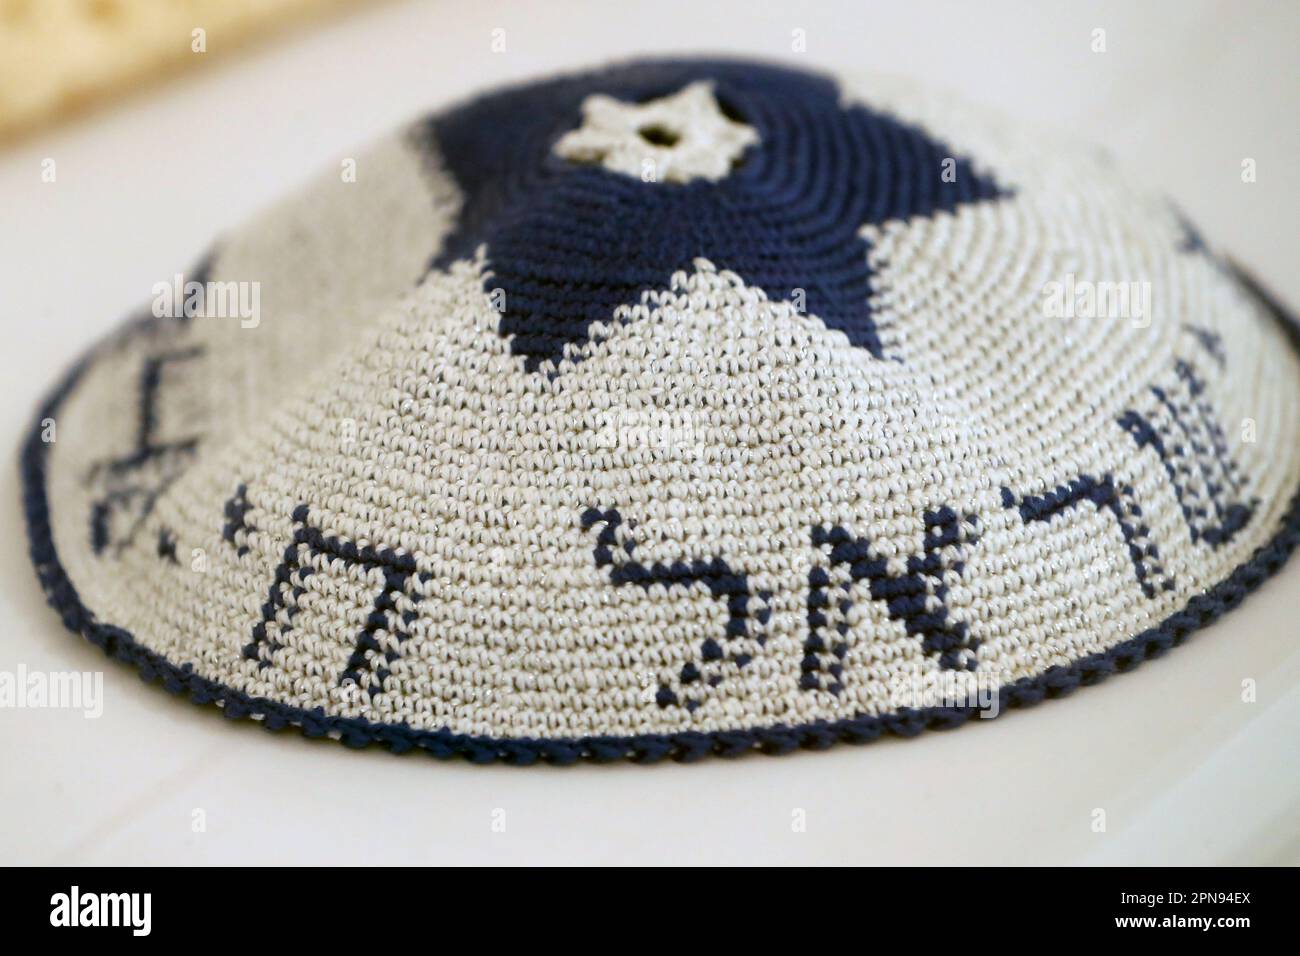 Jüdisches Museum von Florida. Kippah – traditionelle jüdische Kopfbedeckungen. Stockfoto